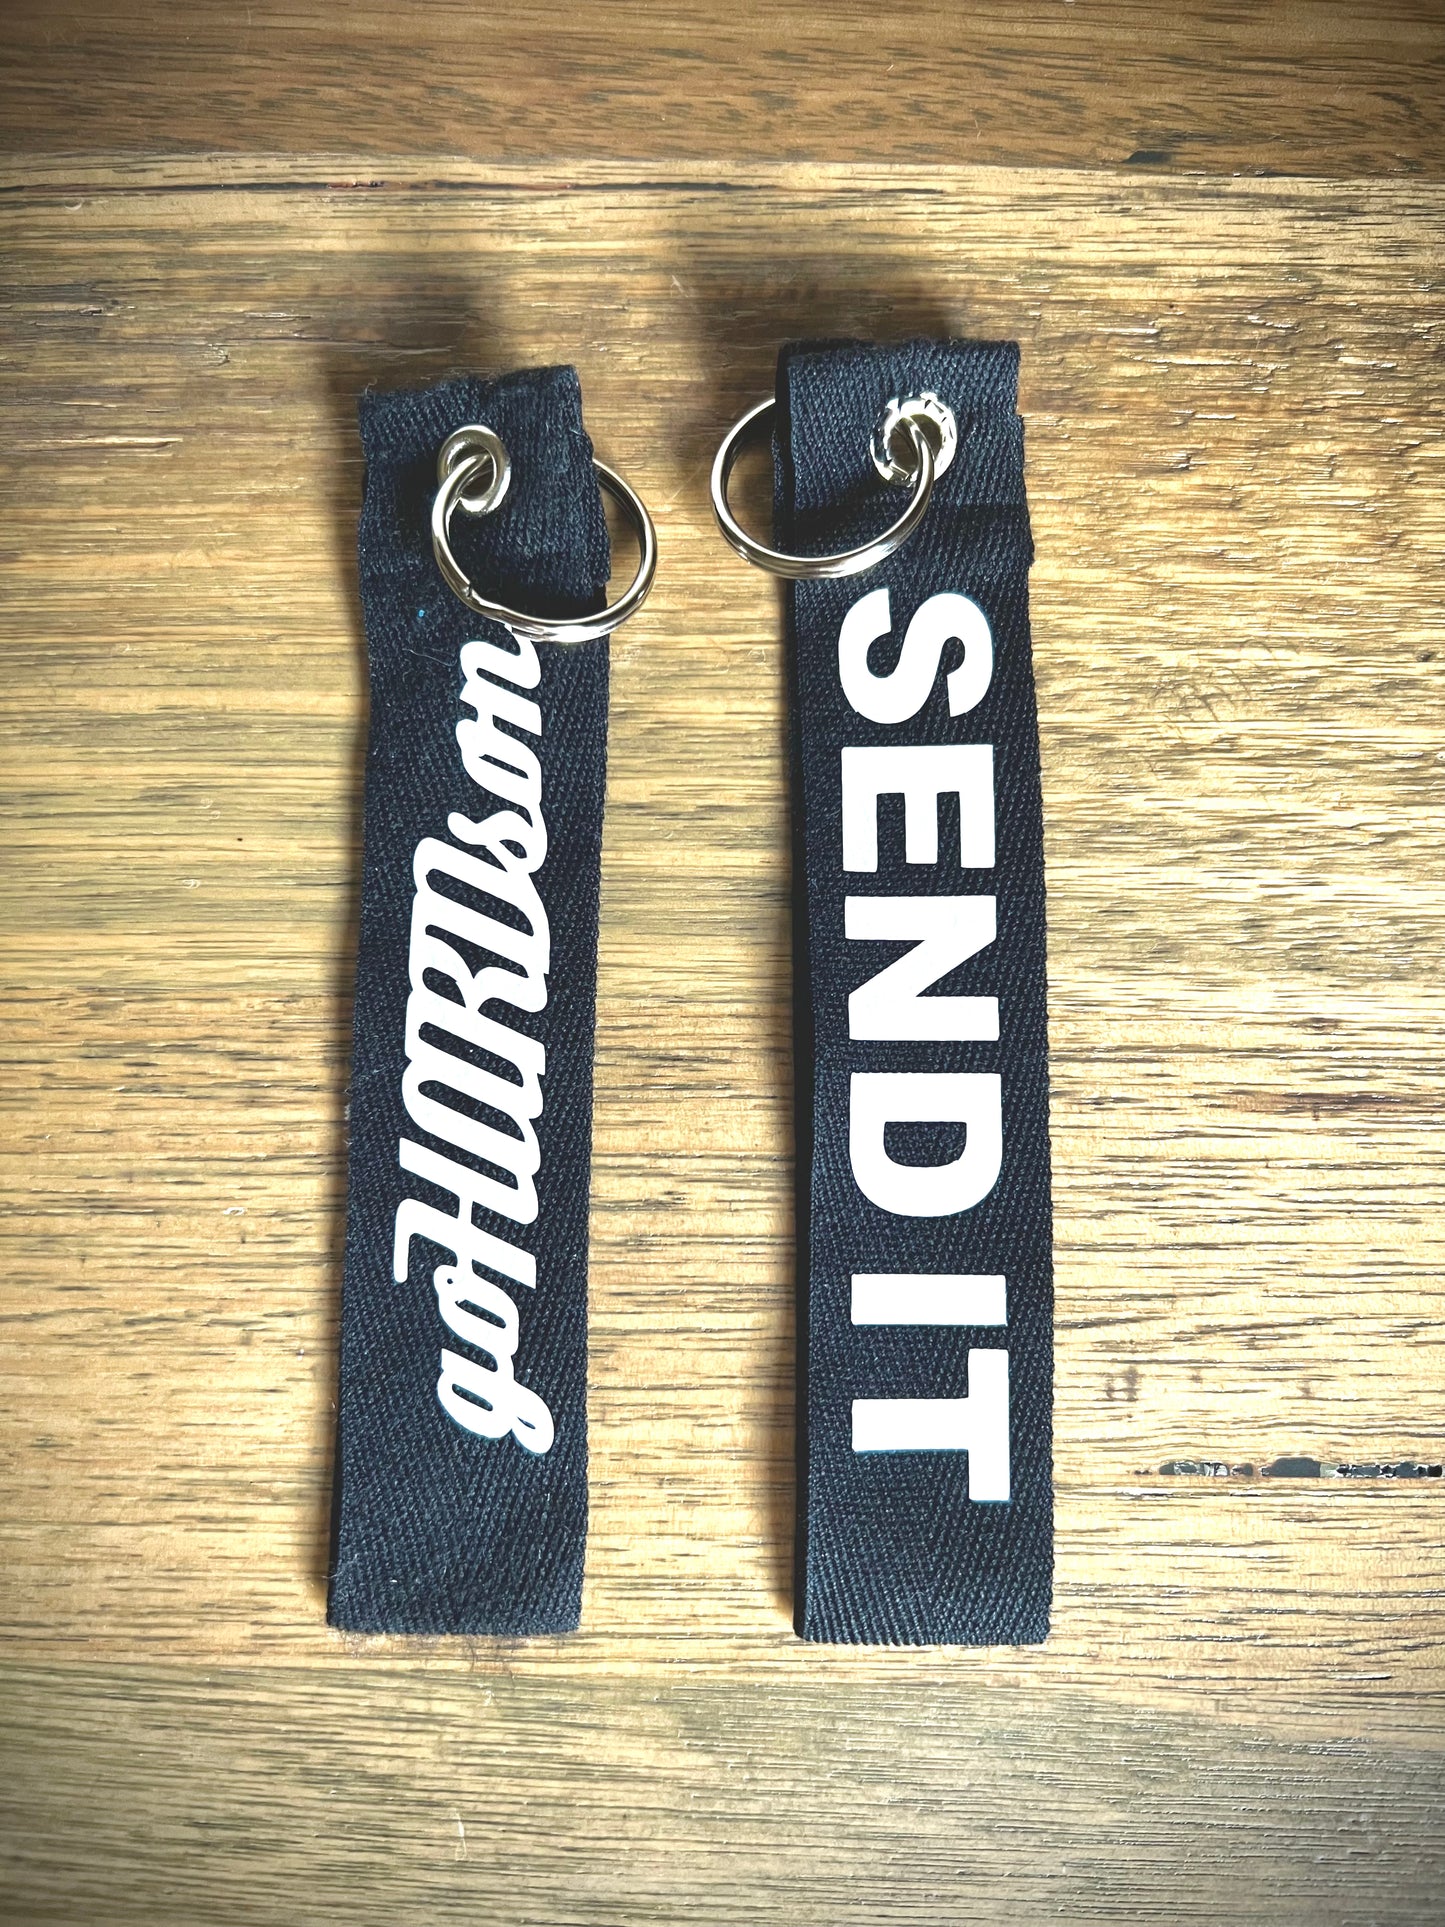 goHARDson shorty key strap